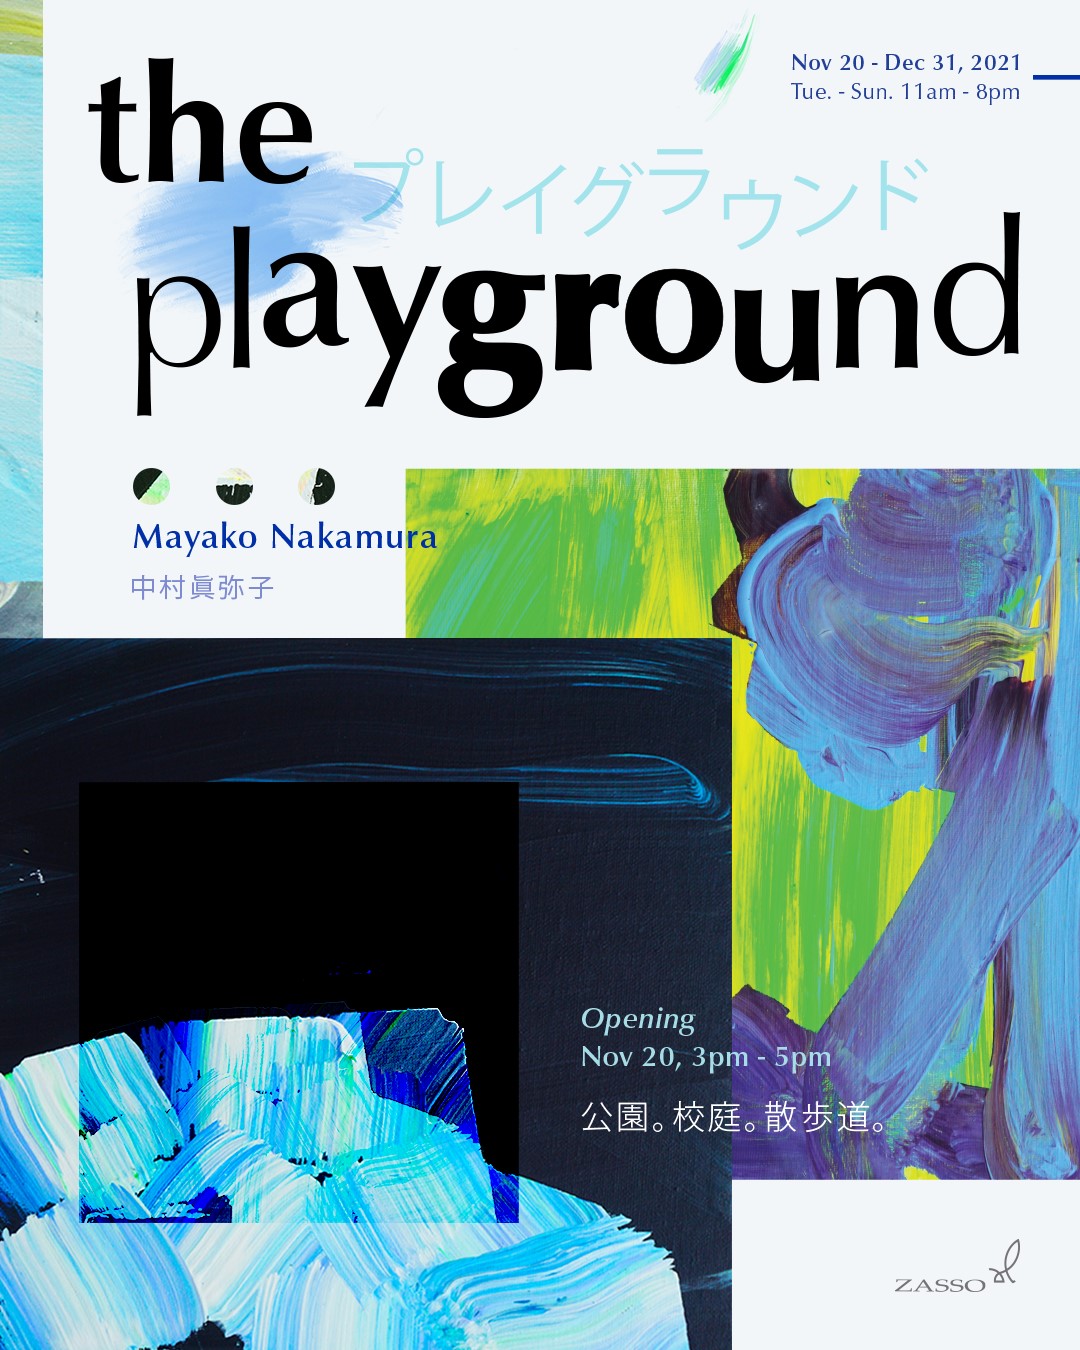 中村 眞弥子 on Twitter: &quot;☆The Playground 情報☆この度 台中/台湾 の ZASSOにて 中村眞弥子展・The Playground (プレイグラウンド)を開催させていただく運びとなりました。ご案内・ご報告申し上げます。2022年カレンダーの原画をはじめたくさんのエネルギーを注いだ ...